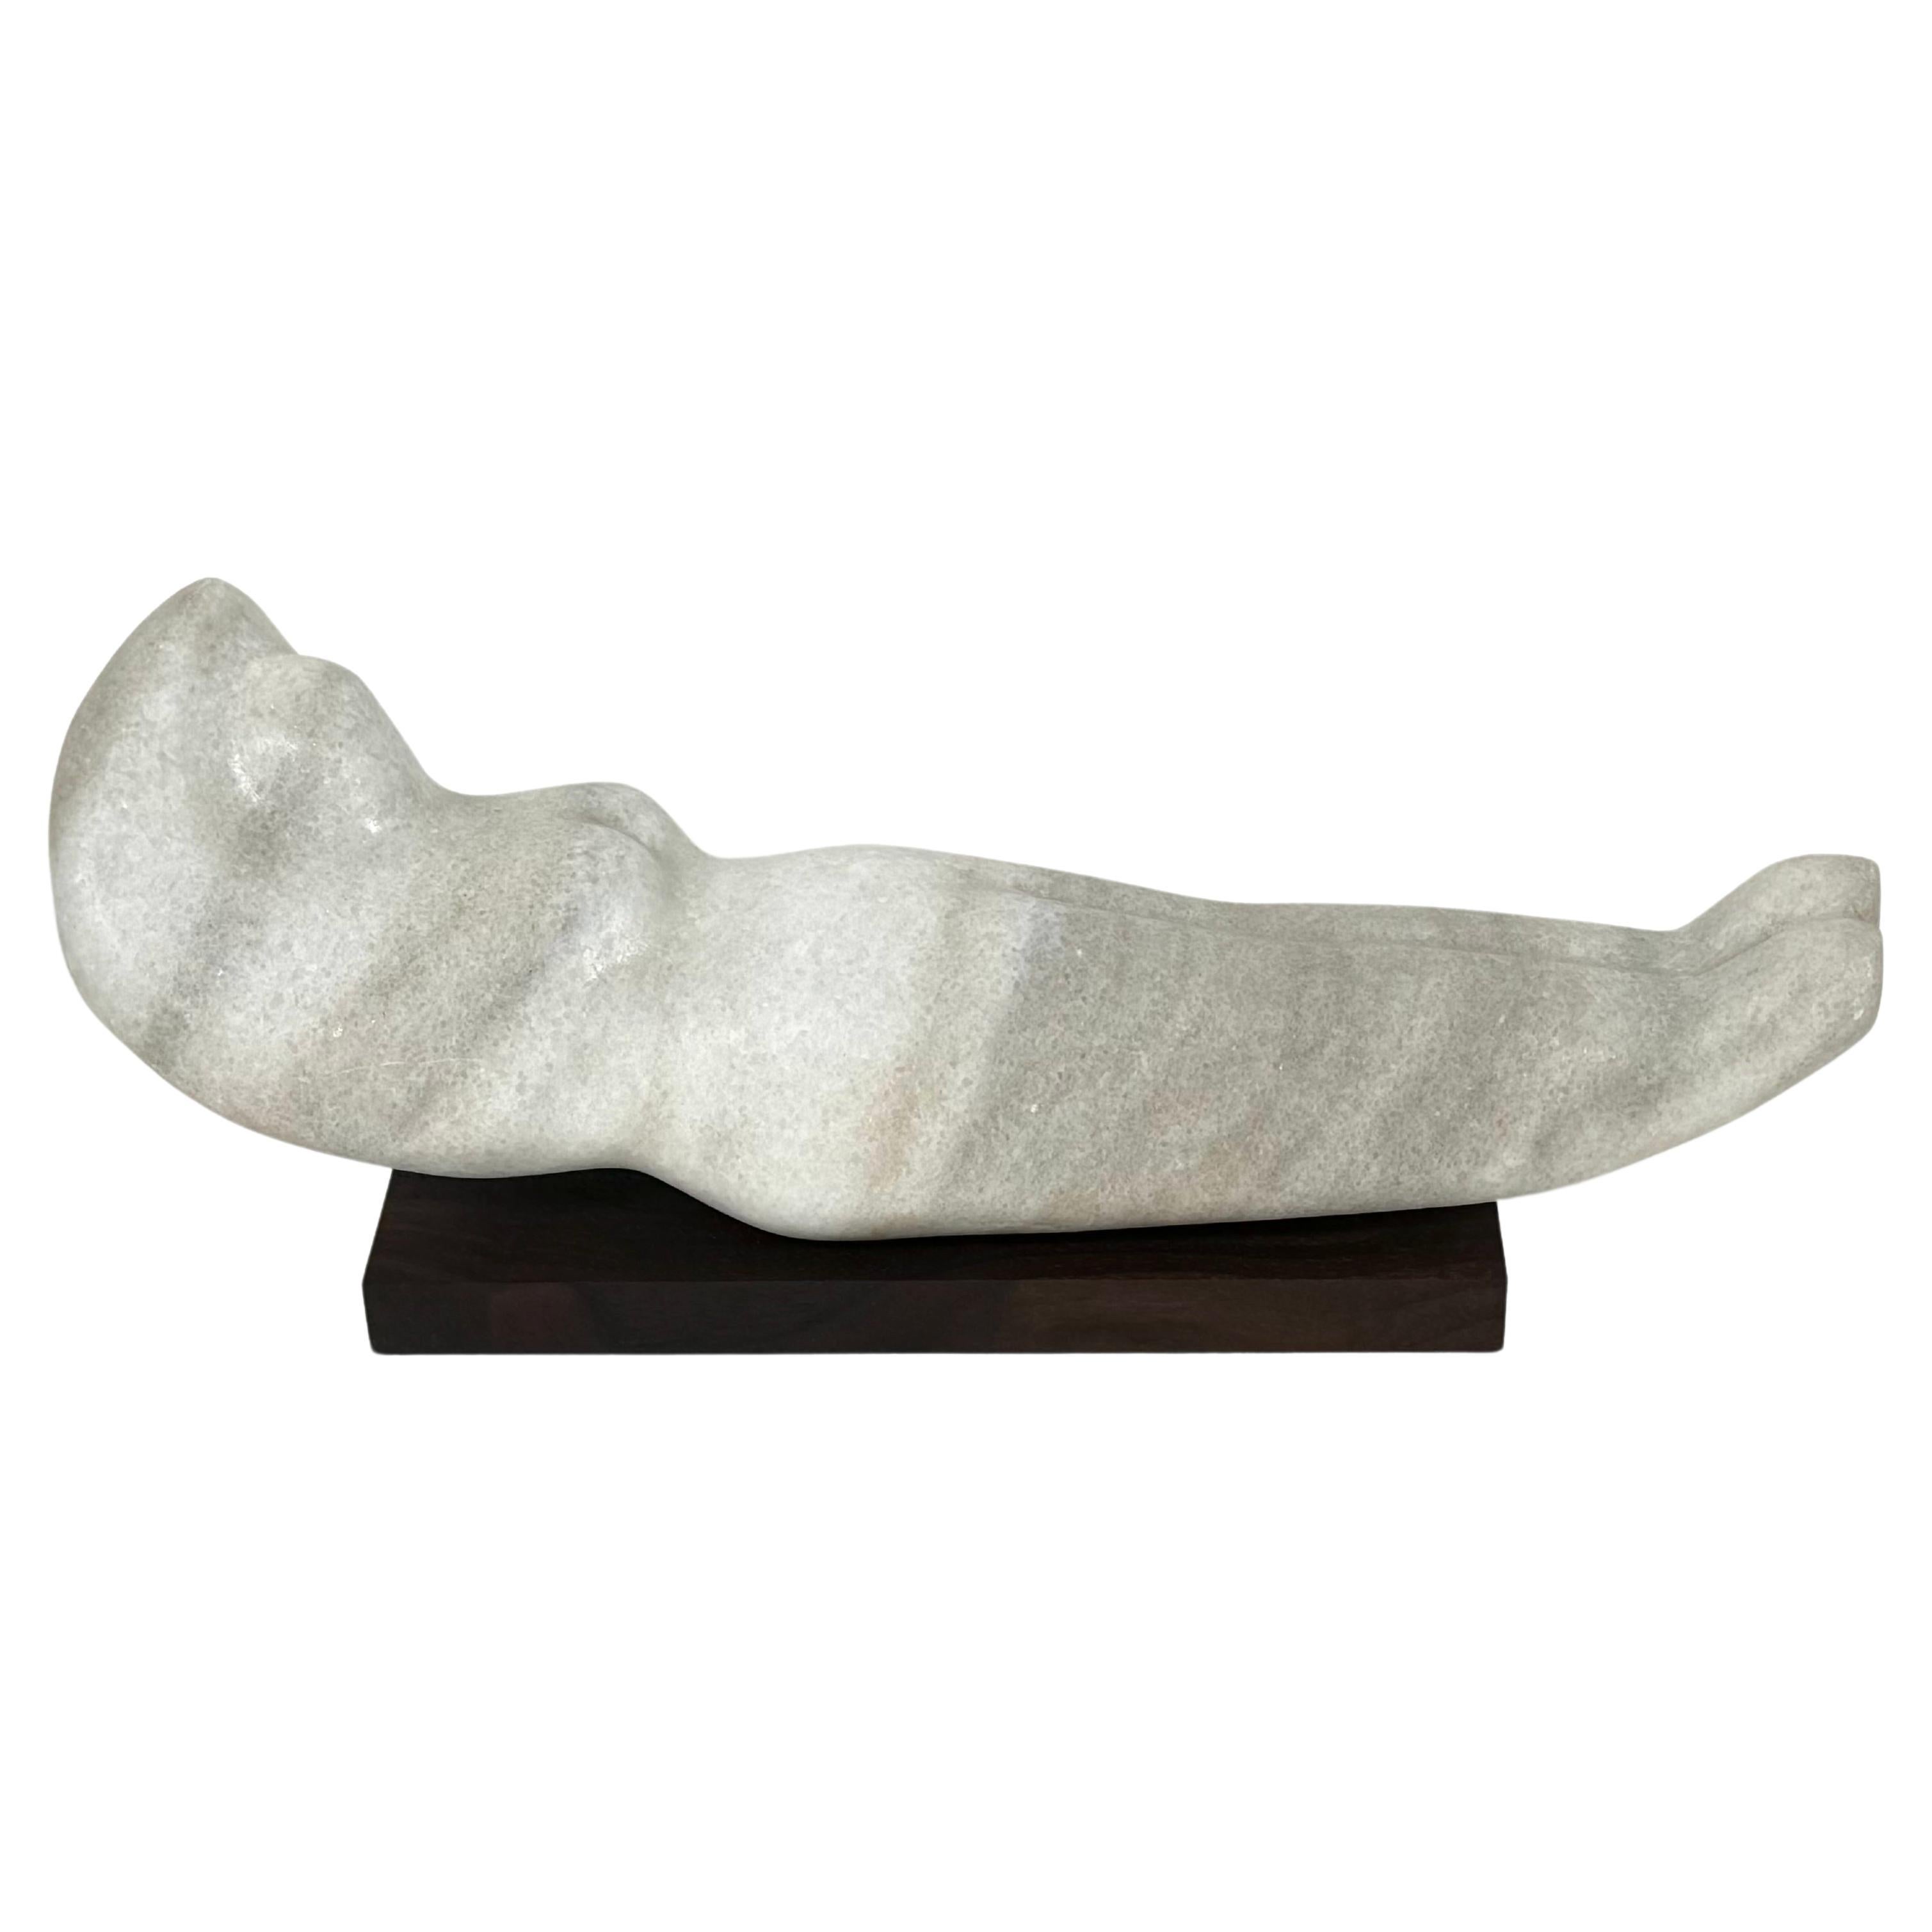 Abstrakte figurative weibliche Skulptur aus Marmor